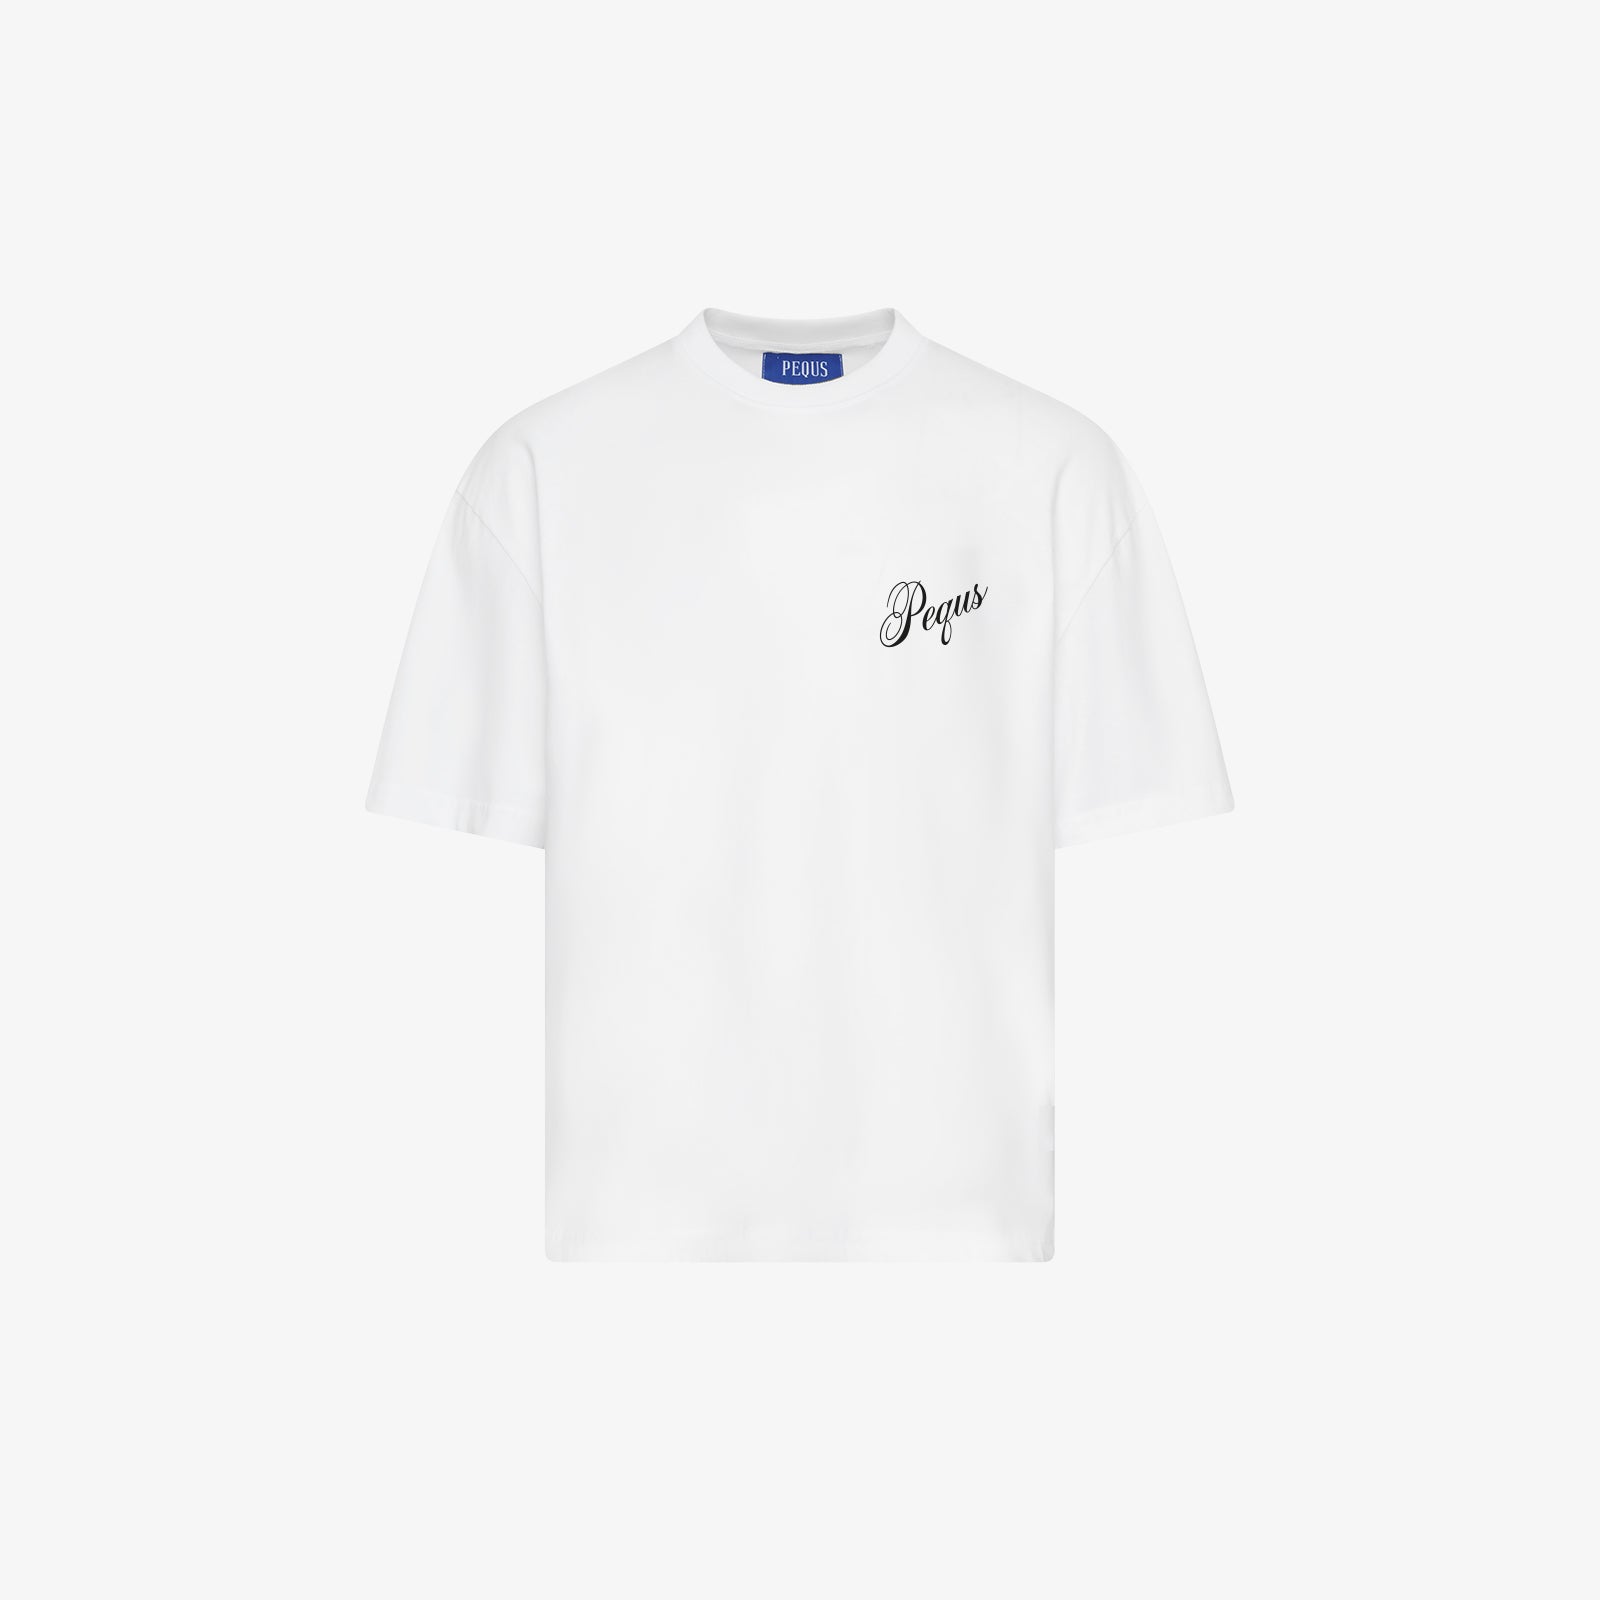 Apollon T-Shirt